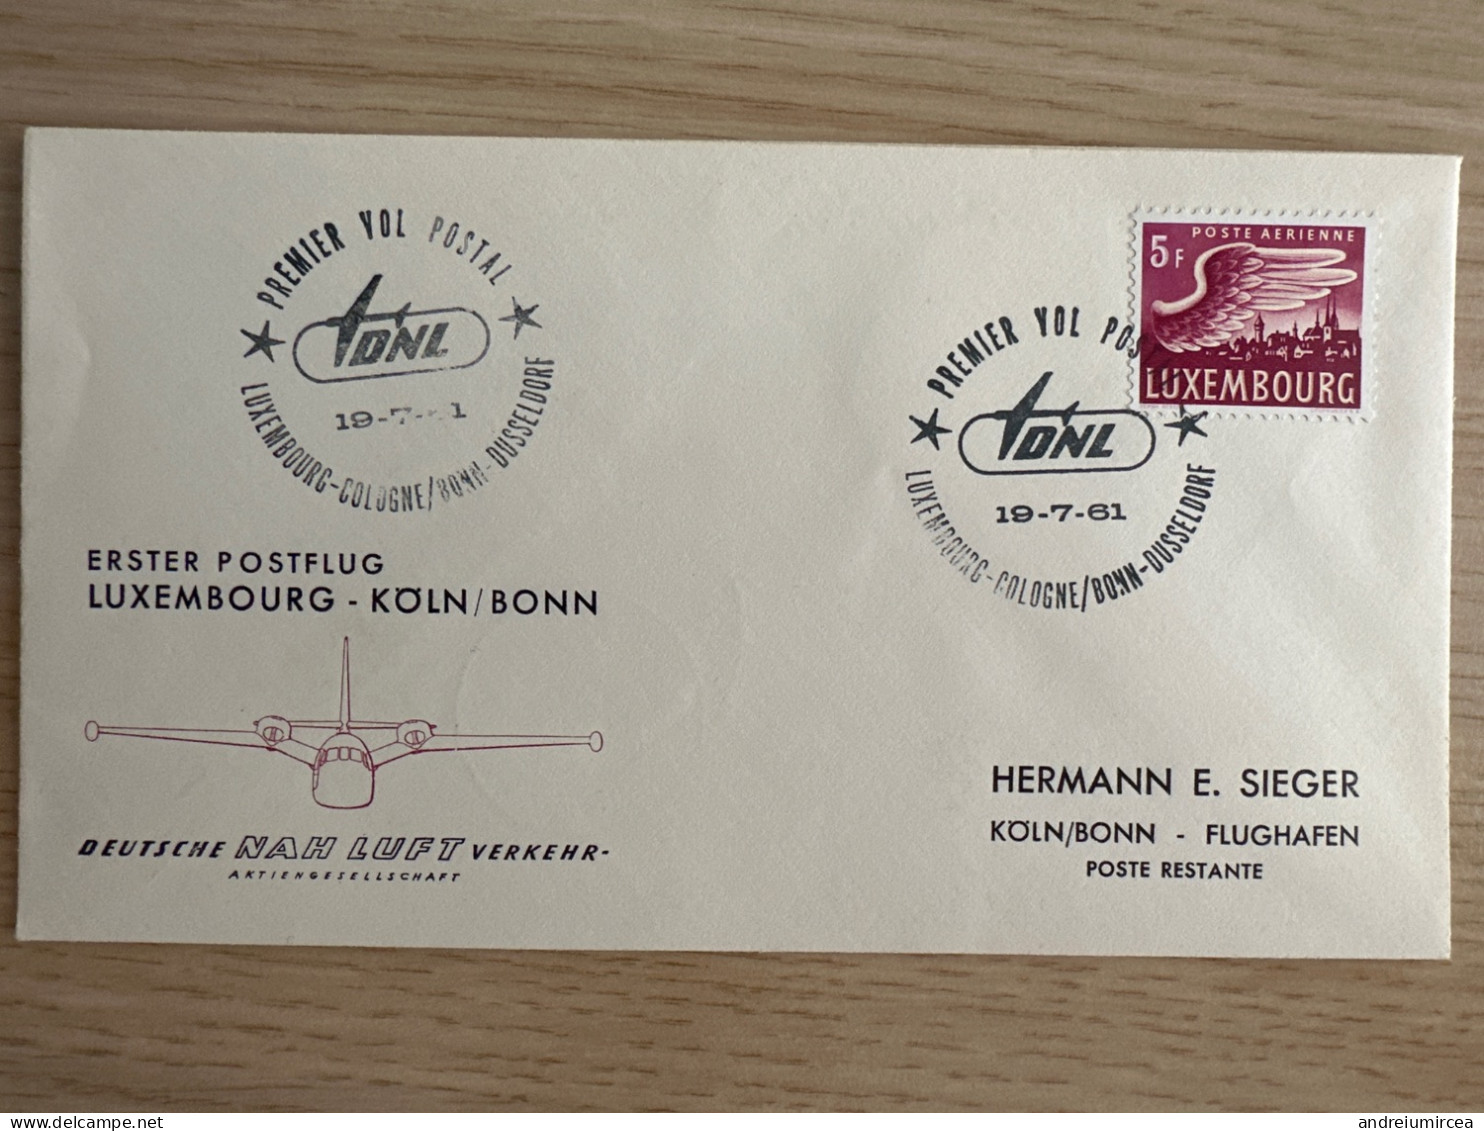 1961 Premier Vol Postal Luxembourg-Koln/Bonn - Storia Postale